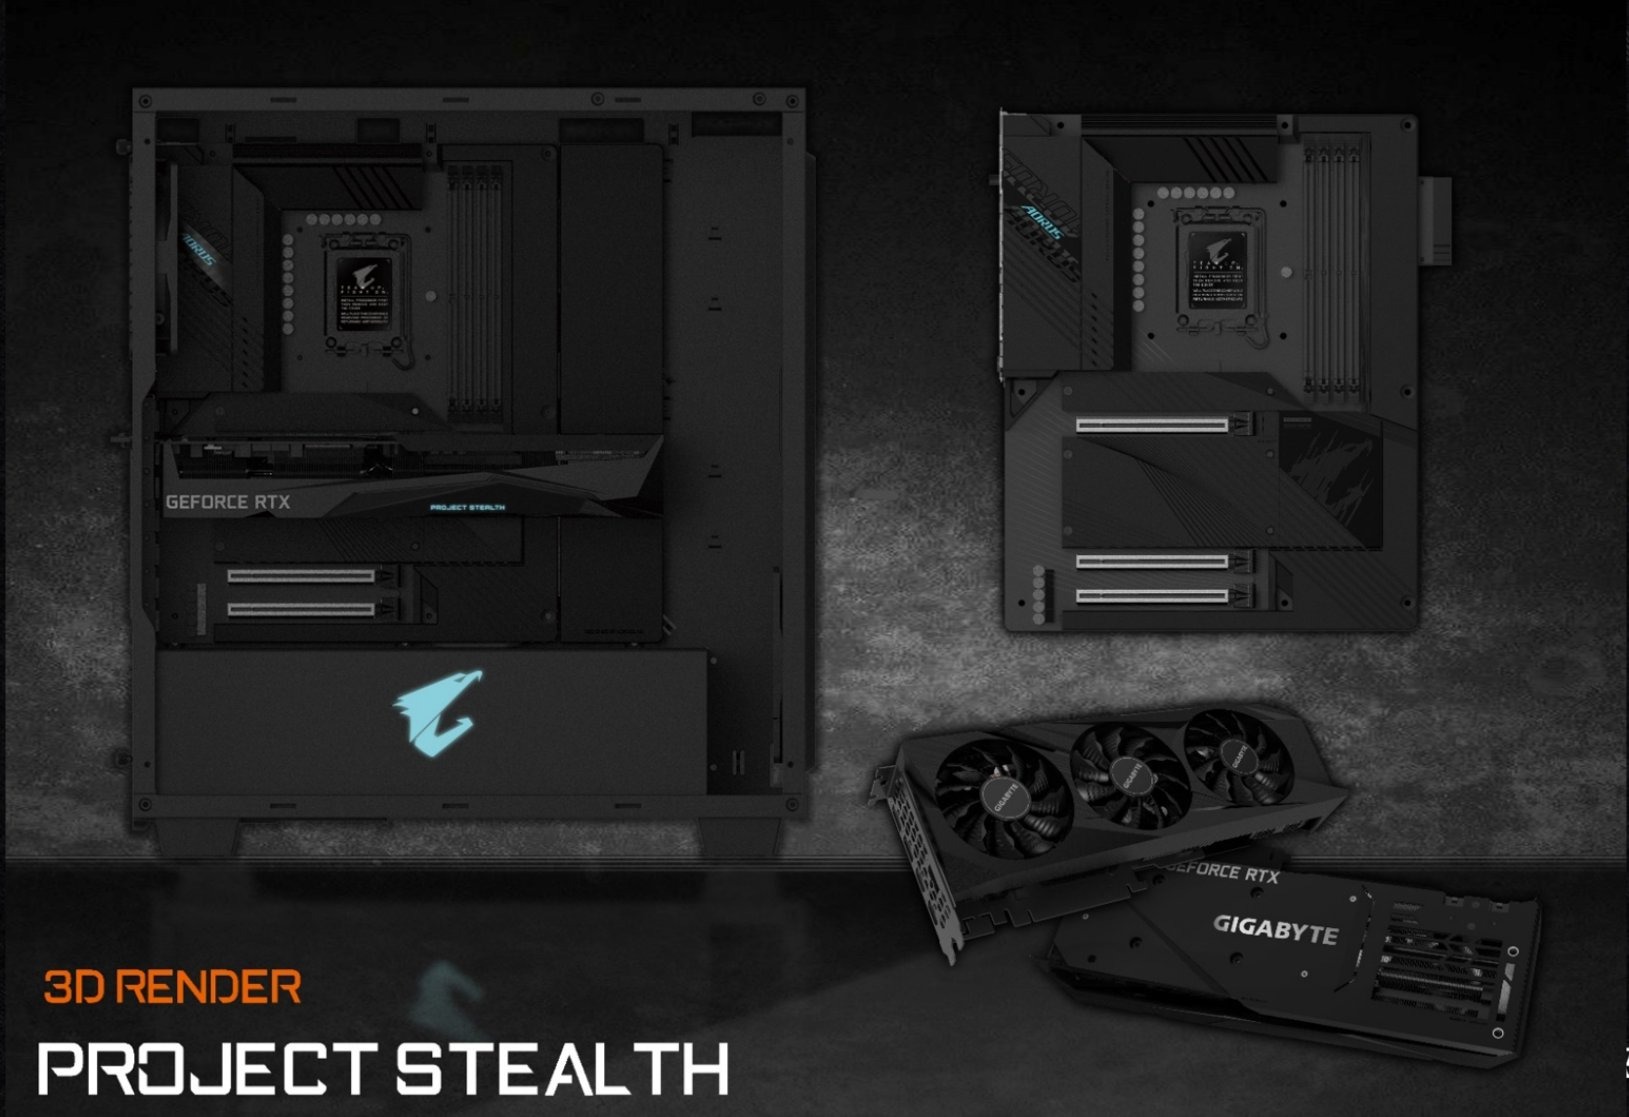 AORUS : Project Stealth, une gamme PC de produits pour rendre vos câbles "invisibles"